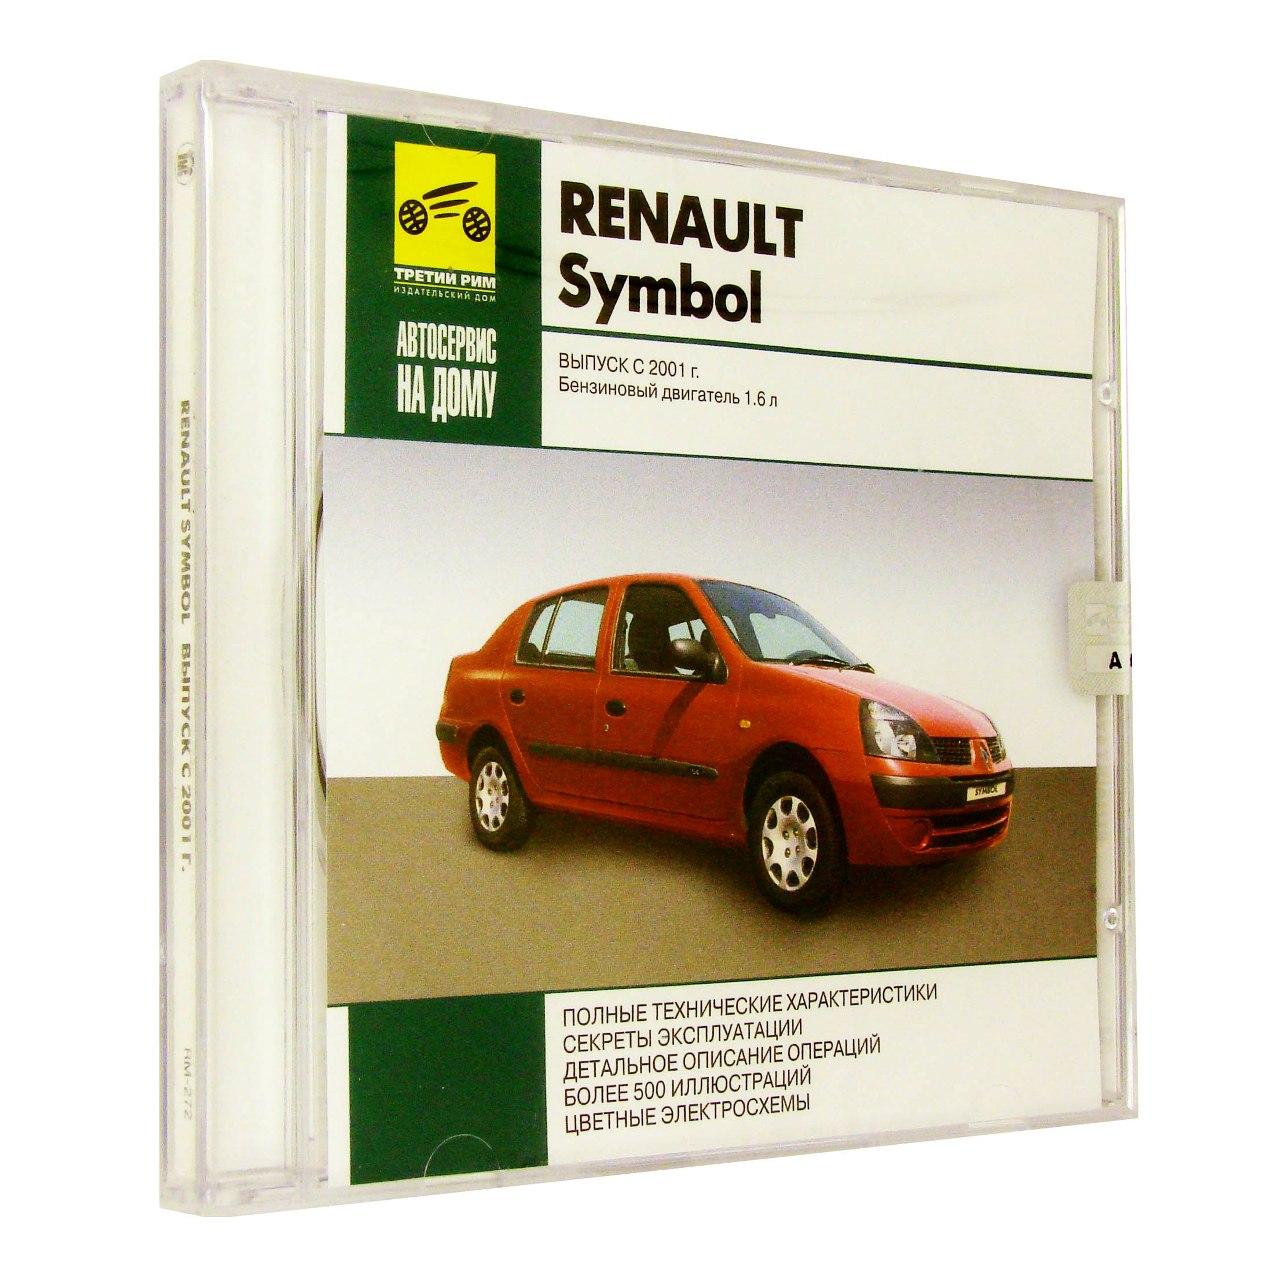 Компьютерный компакт-диск Renault Symbol Выпуск с 2001 Автосервис на дому. (ПК), фирма "РМГ Мультимедиа", 1CD